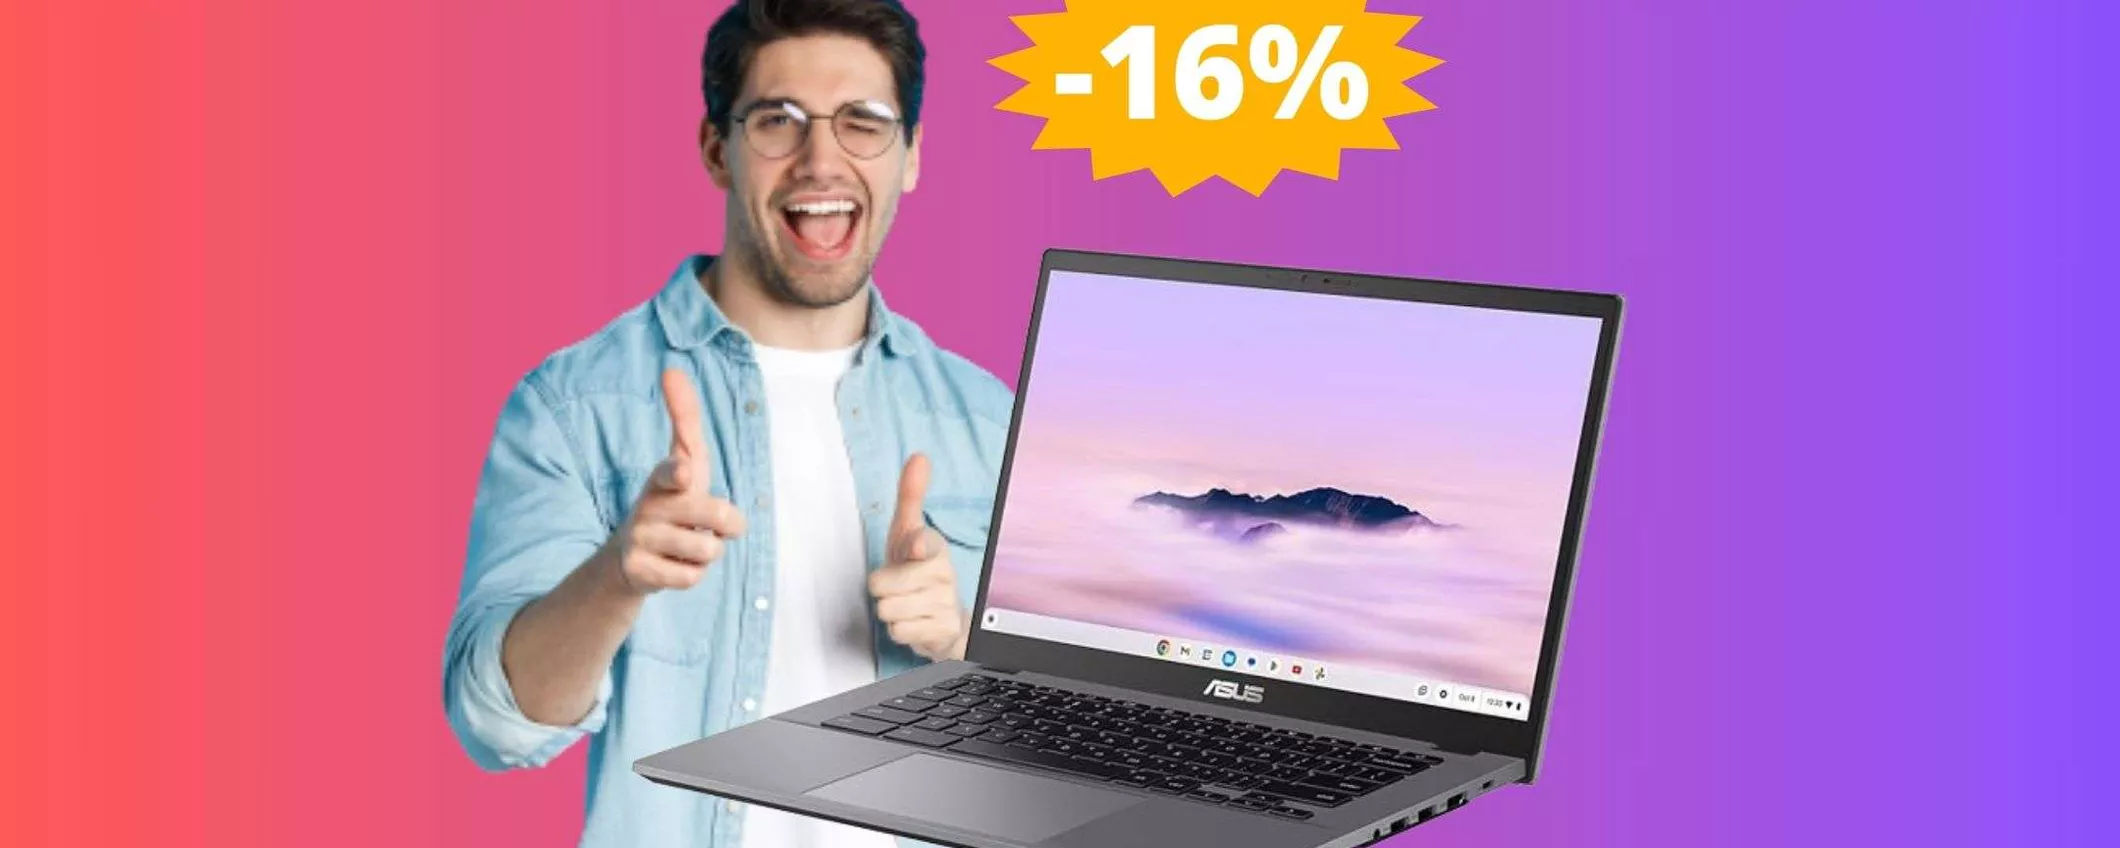 ASUS Chromebook Plus: IMBATTIBILE a questo prezzo (-16%)